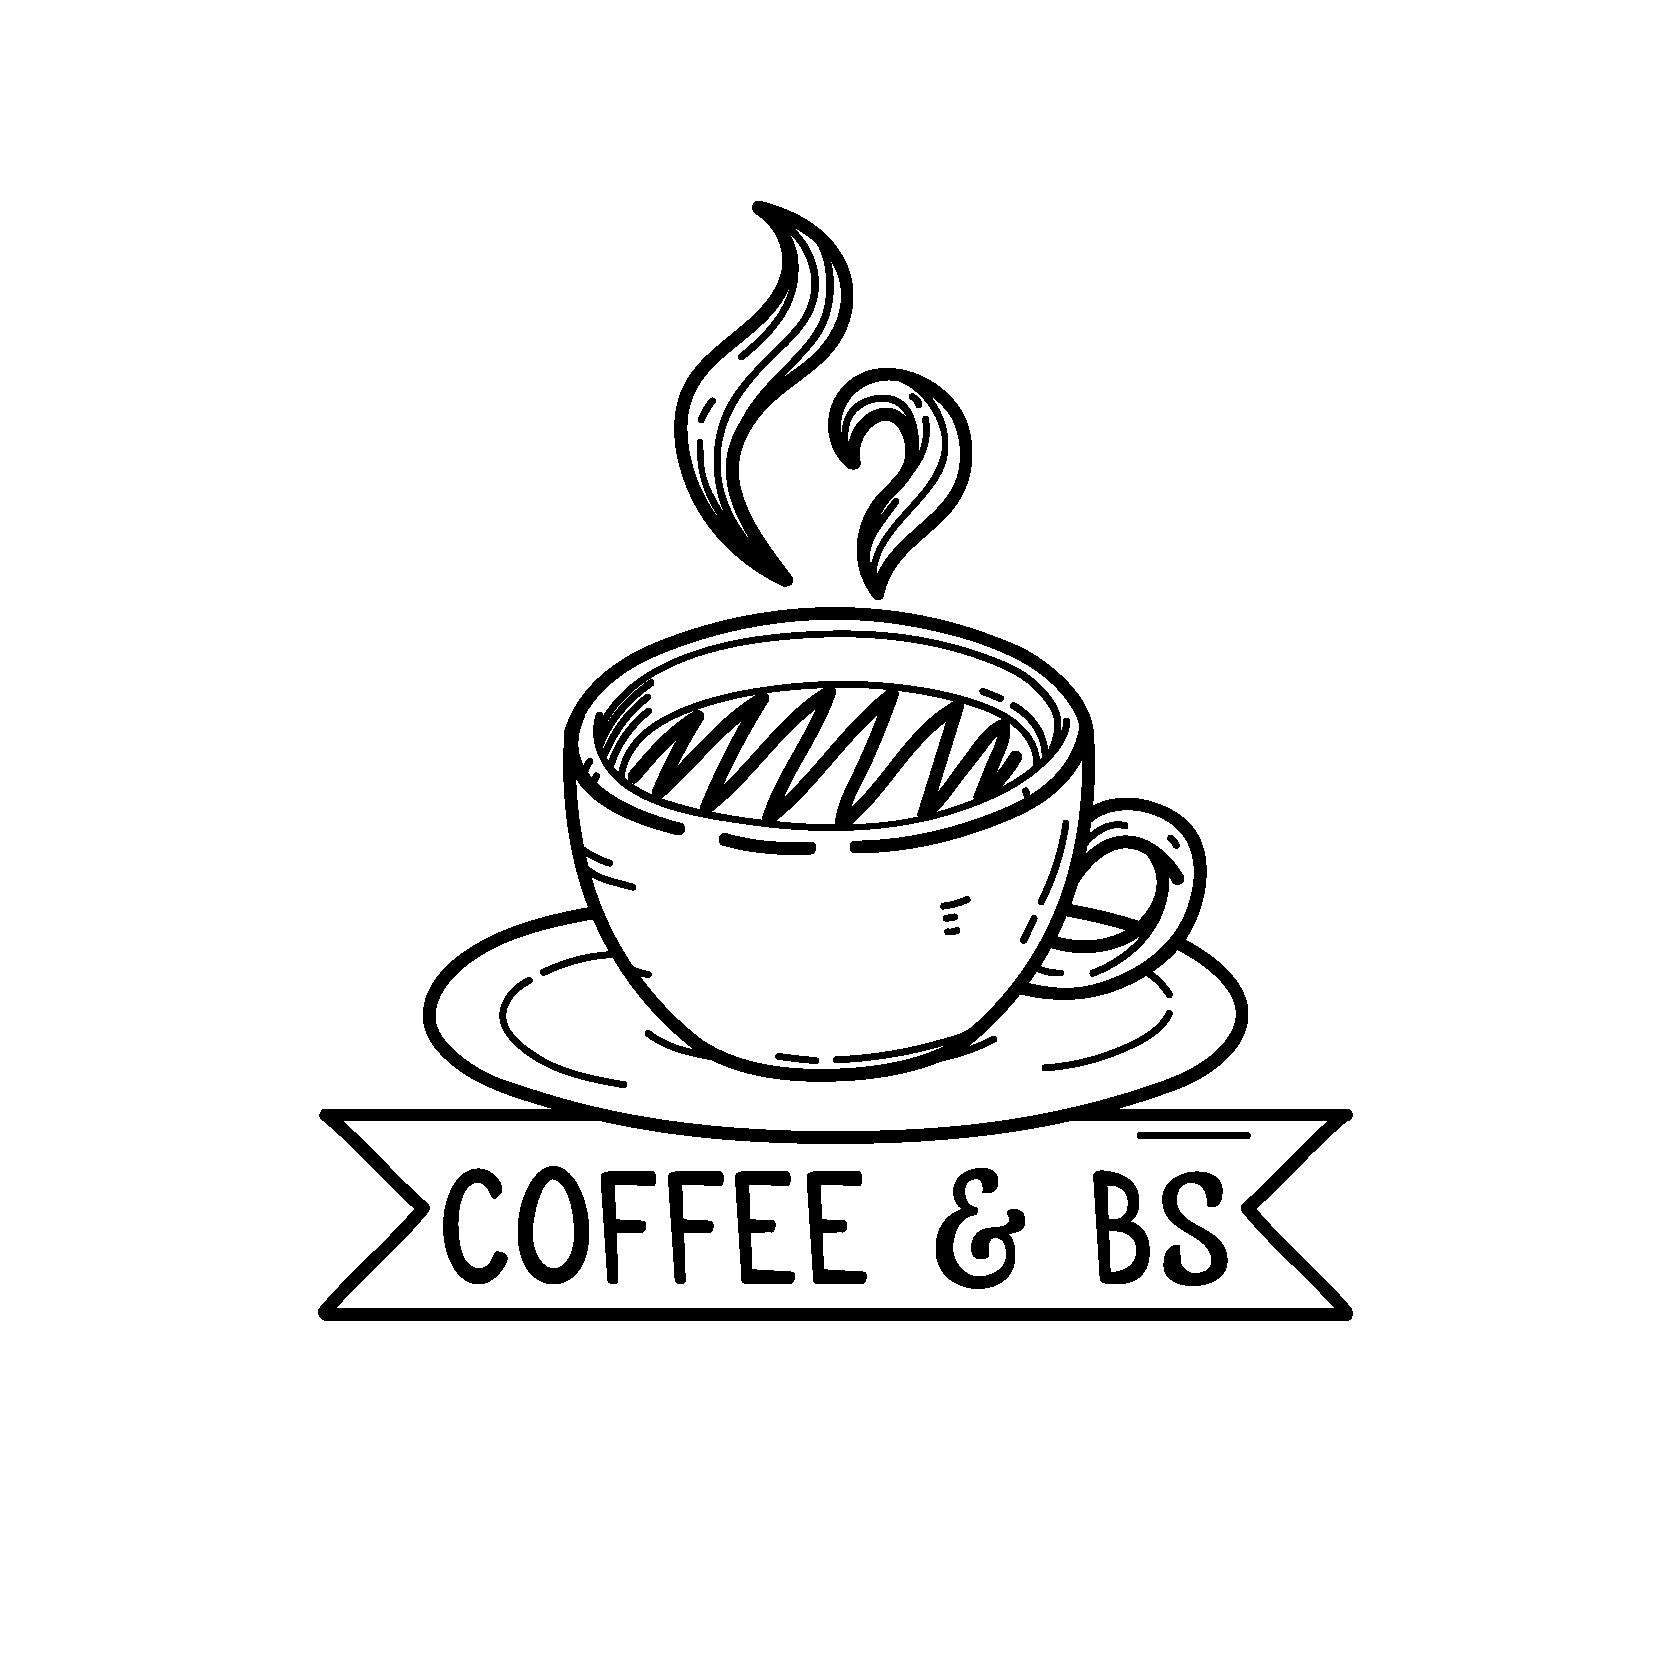 Coffee & BS